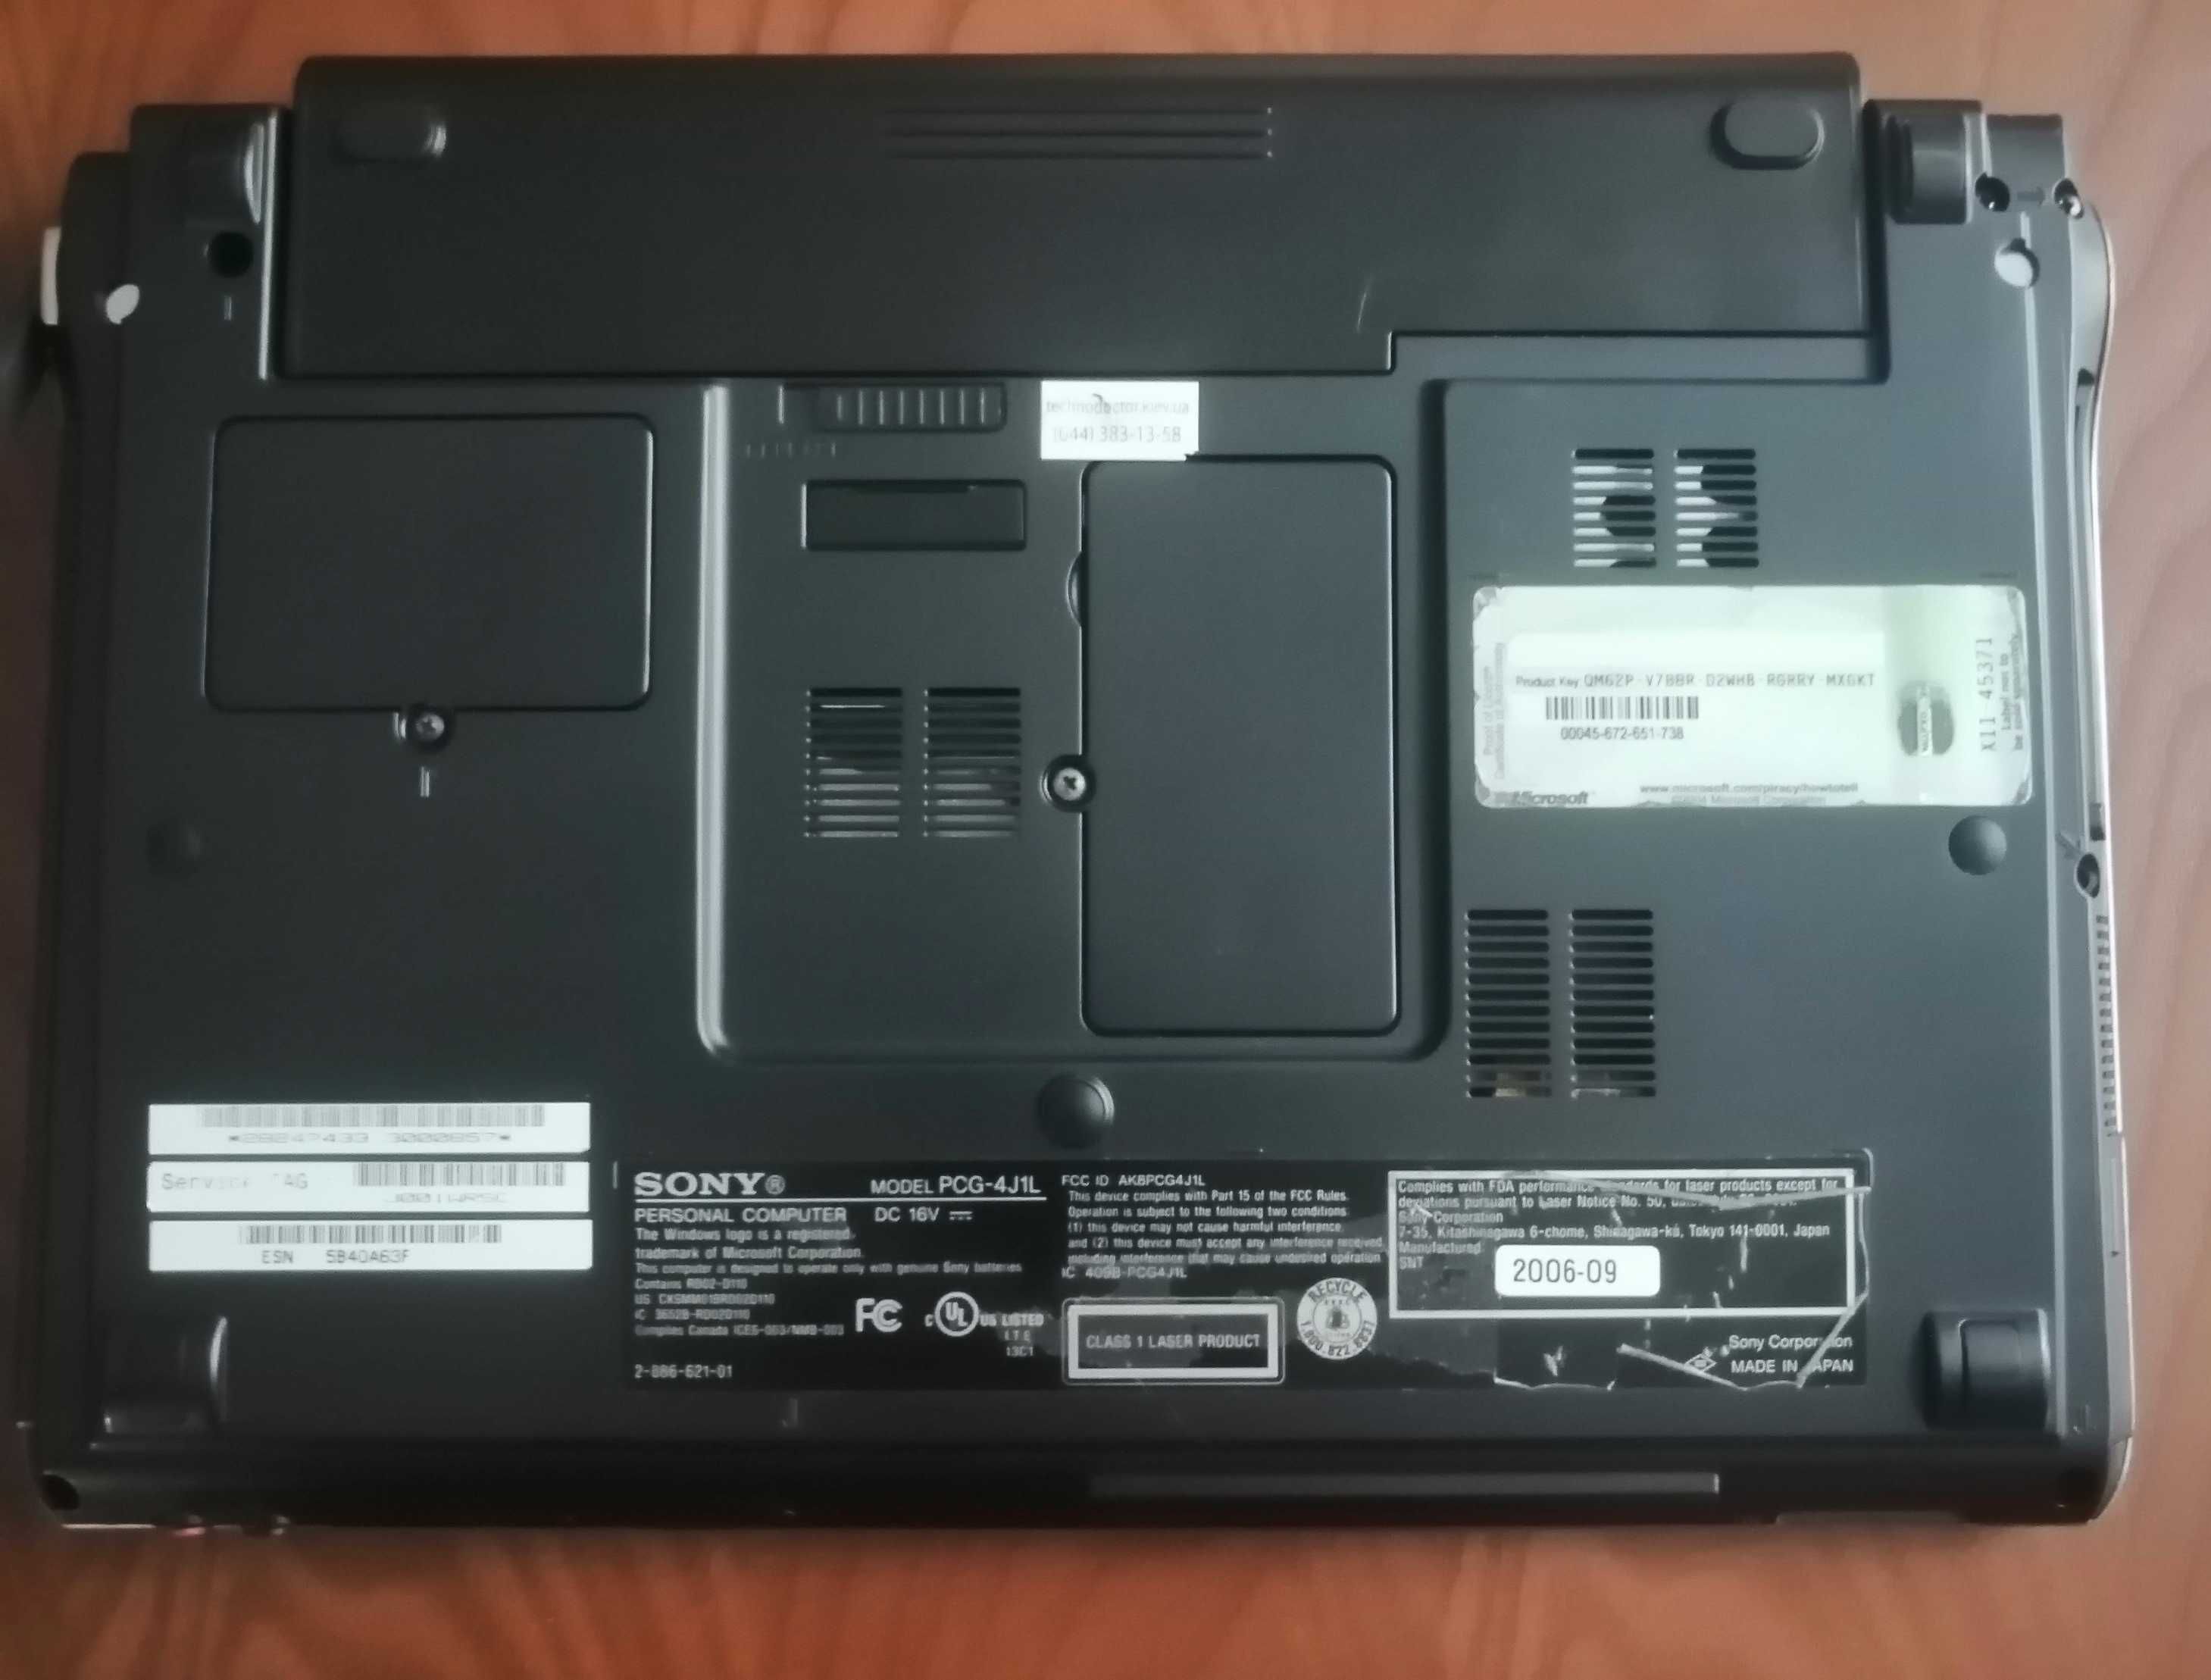 Sony Vaio VGN-PCG 4J1L- ультрапортативний ноутбук 11,1 дюйма